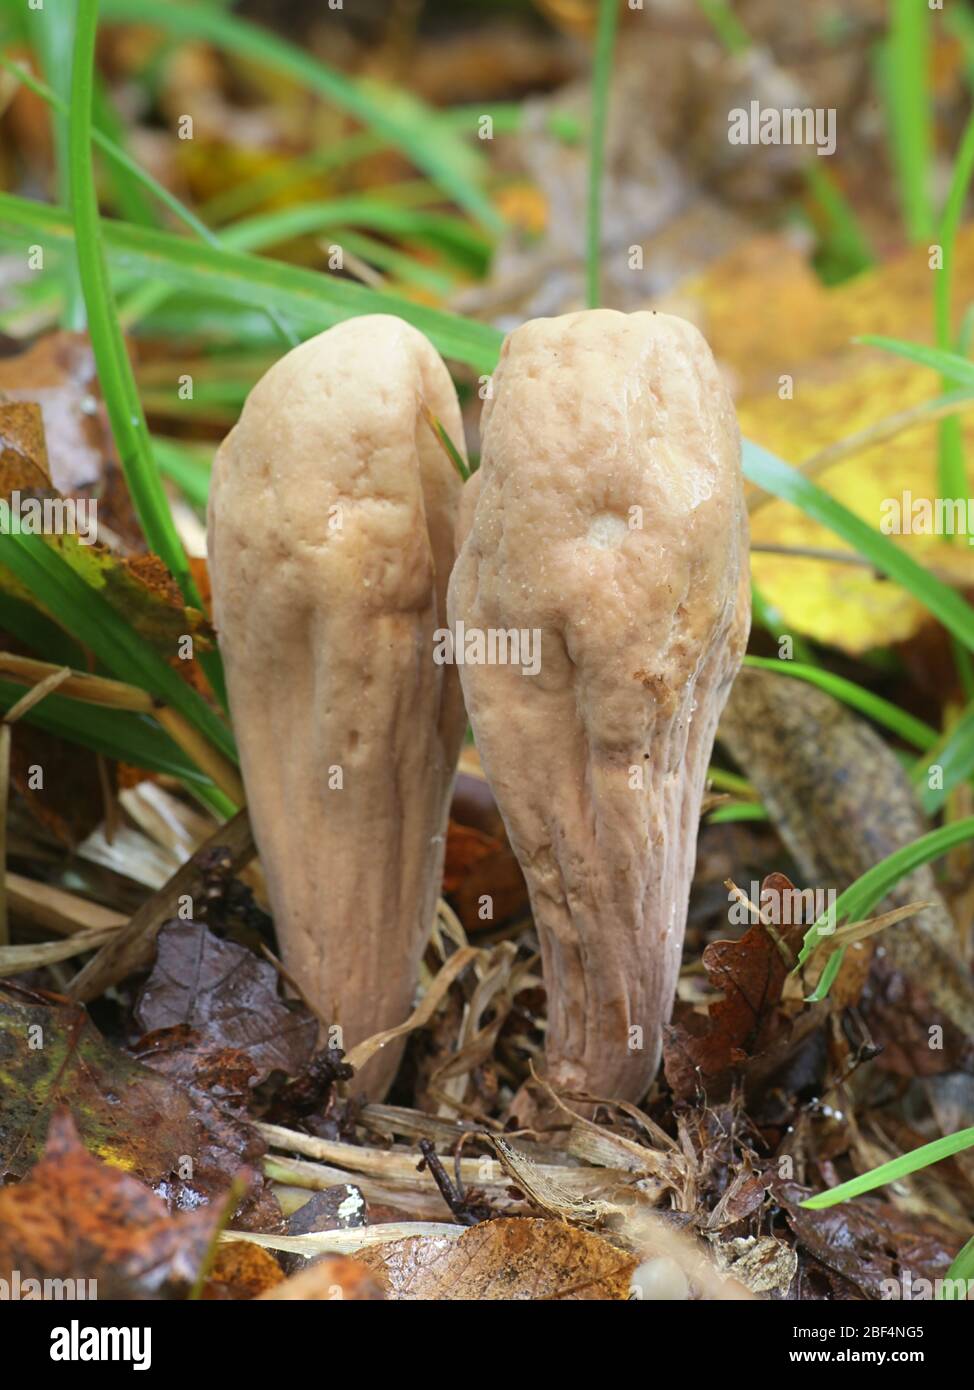 Clavariadelphus pistillaris, als riesige Club Pilz bekannt, als Functional Food durch seine hohe antioxidative Aktivität Stockfoto